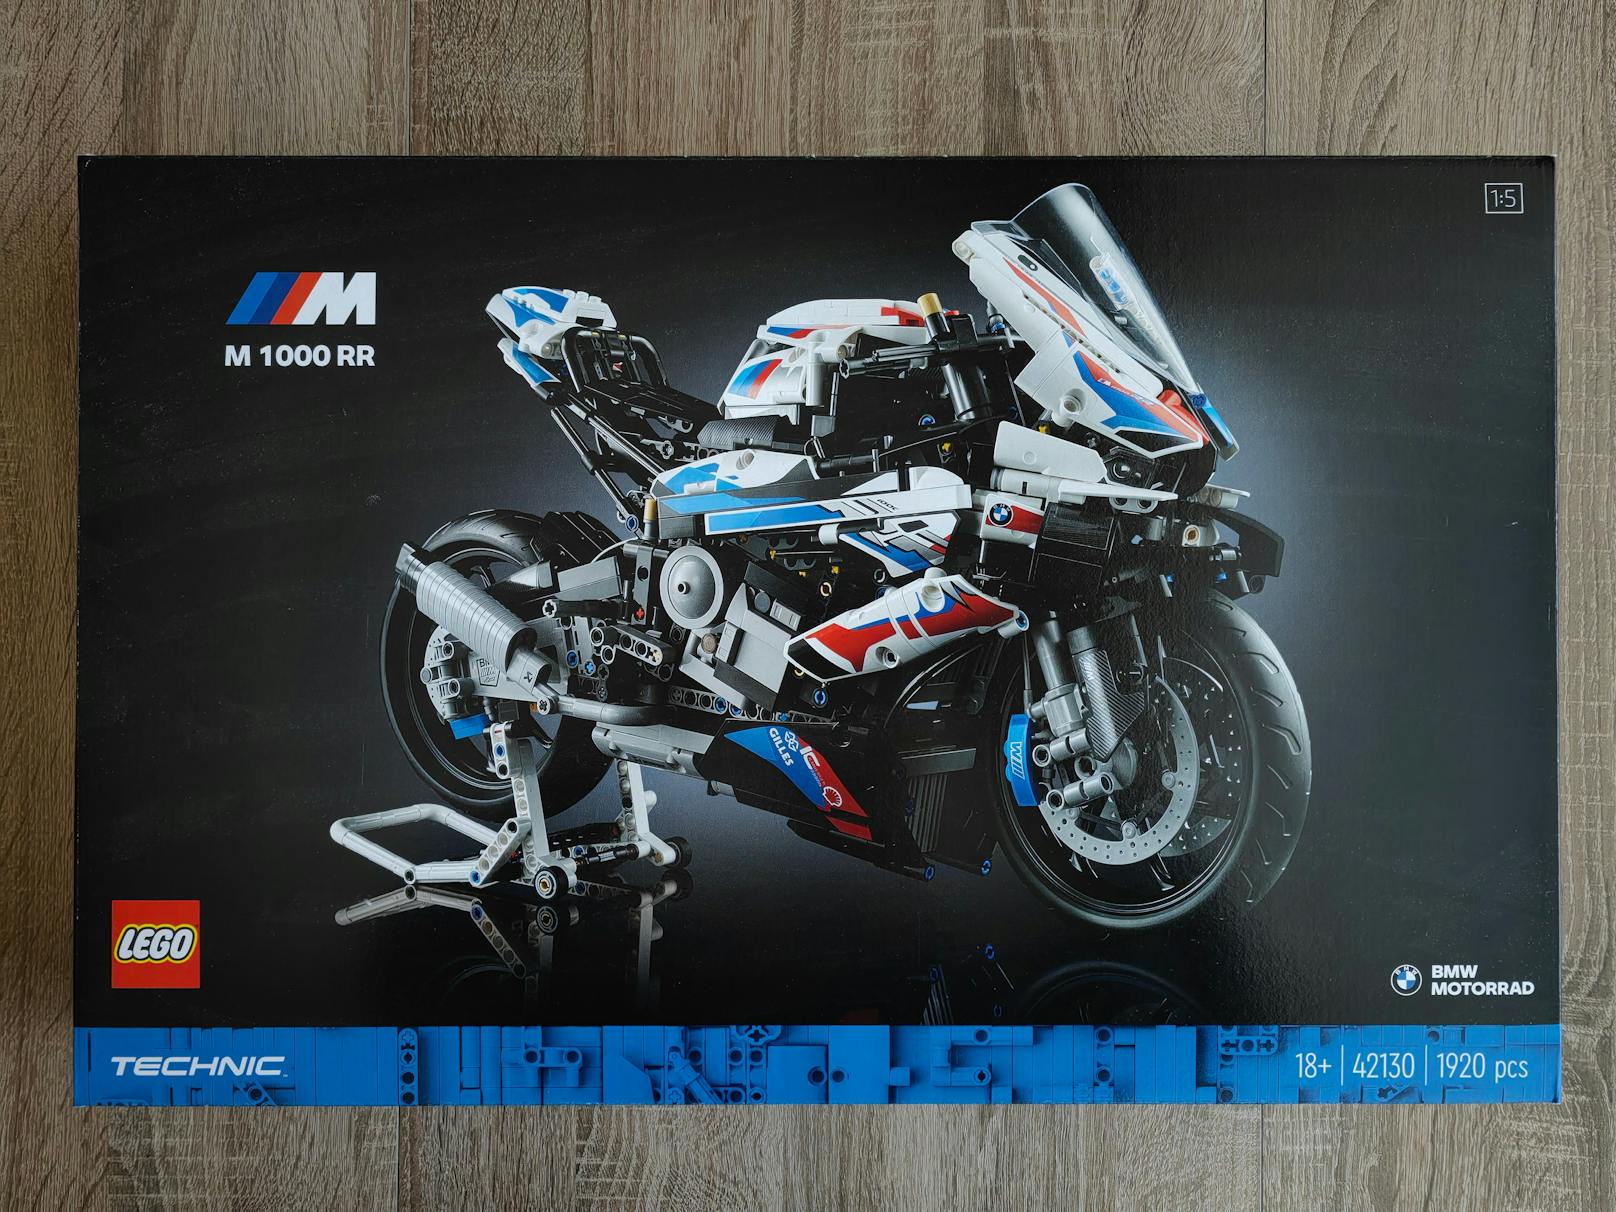 Fantastisch! Das neue LEGO Technic 42130 BMW M 1000 RR Set bringt eines der legendärsten Motorräder aller Zeiten in Bausteinform.&nbsp;